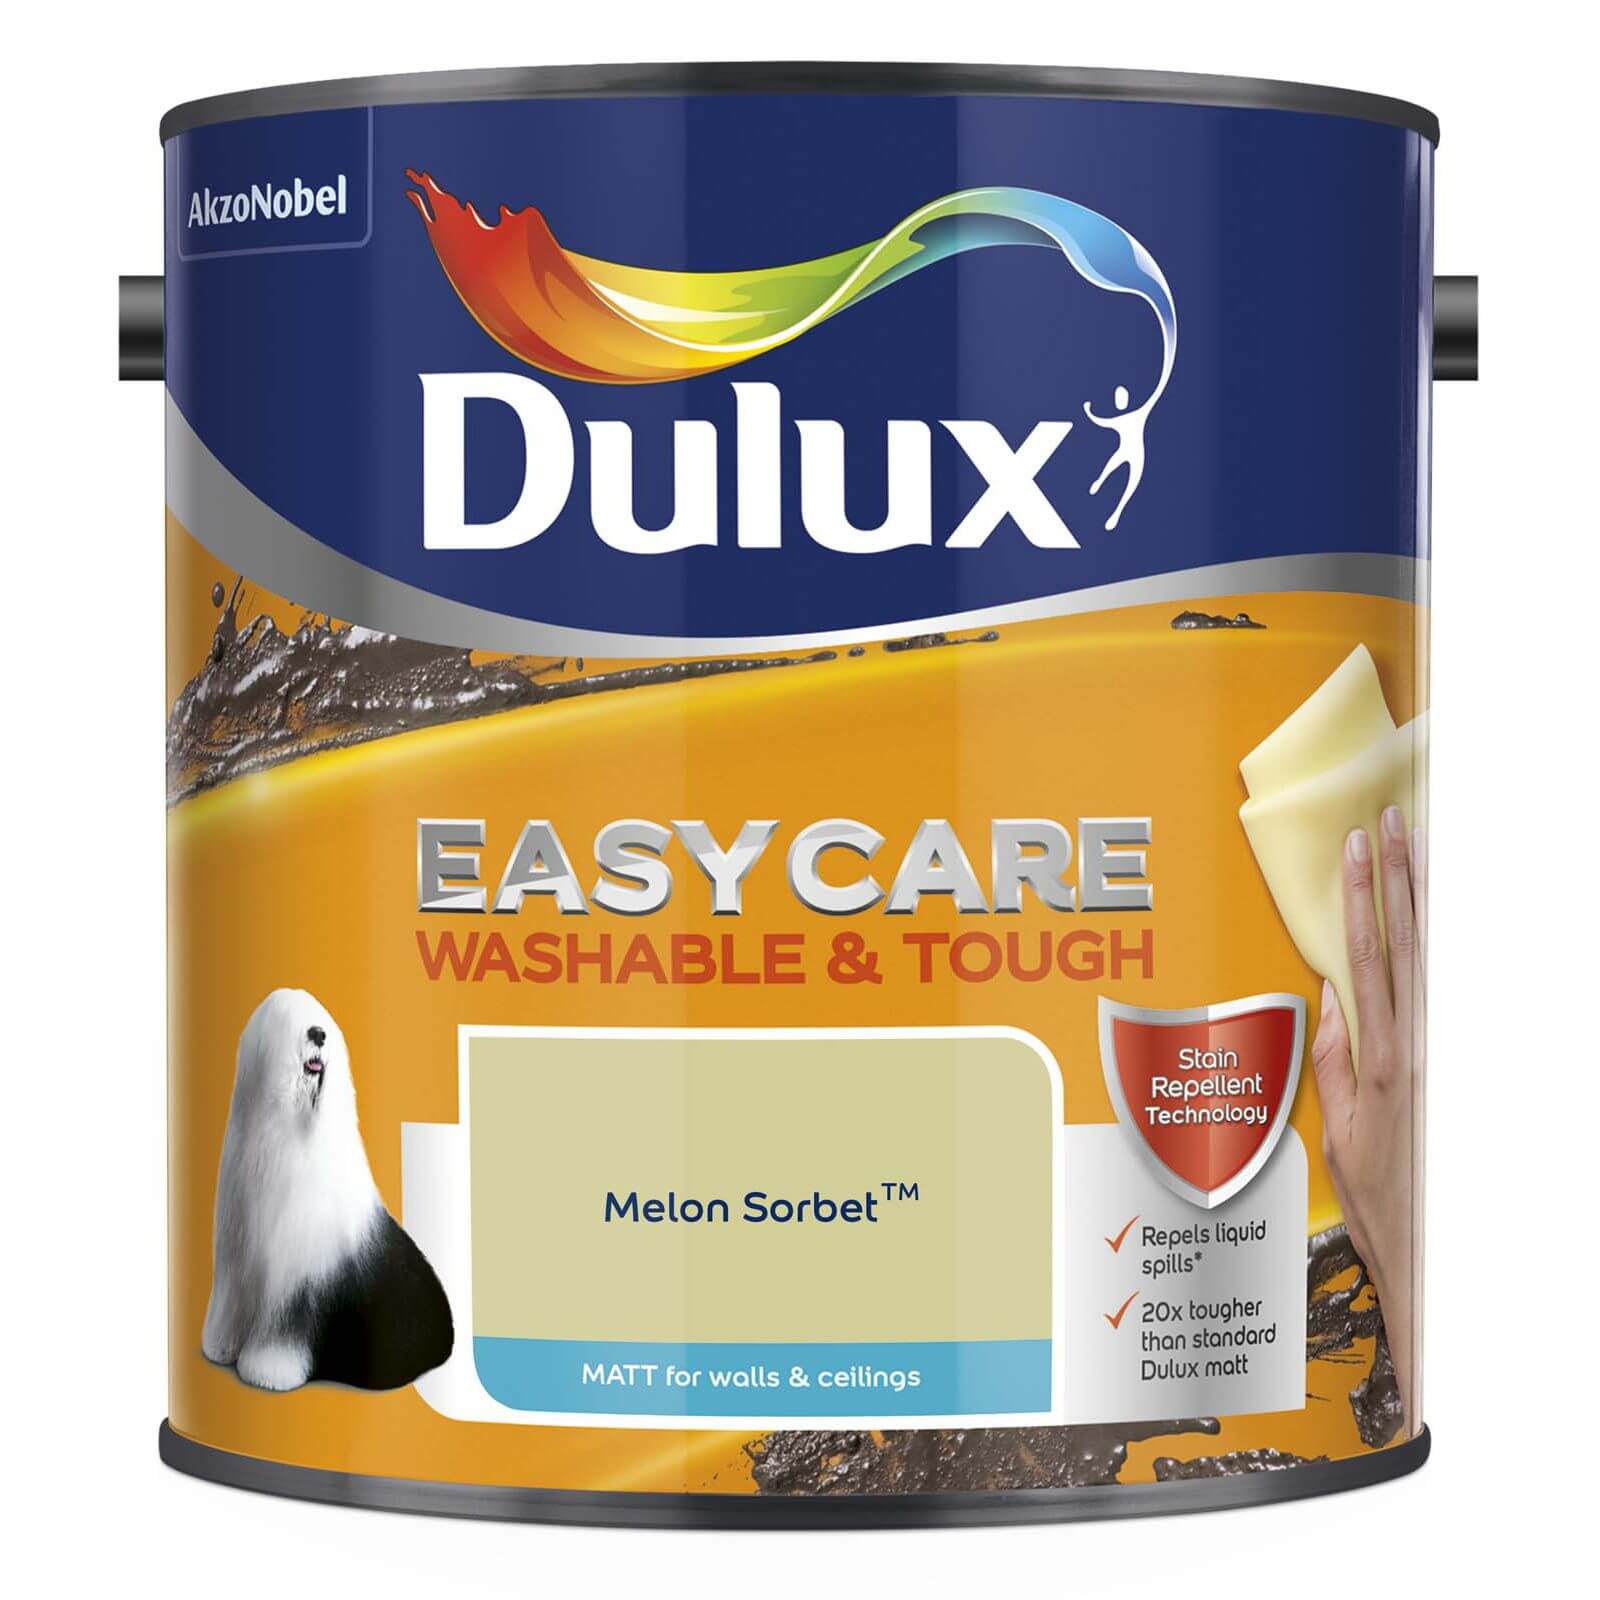 Dulux Easycare Washable & Tough Melon Sorbet Matt Paint - 2.5L